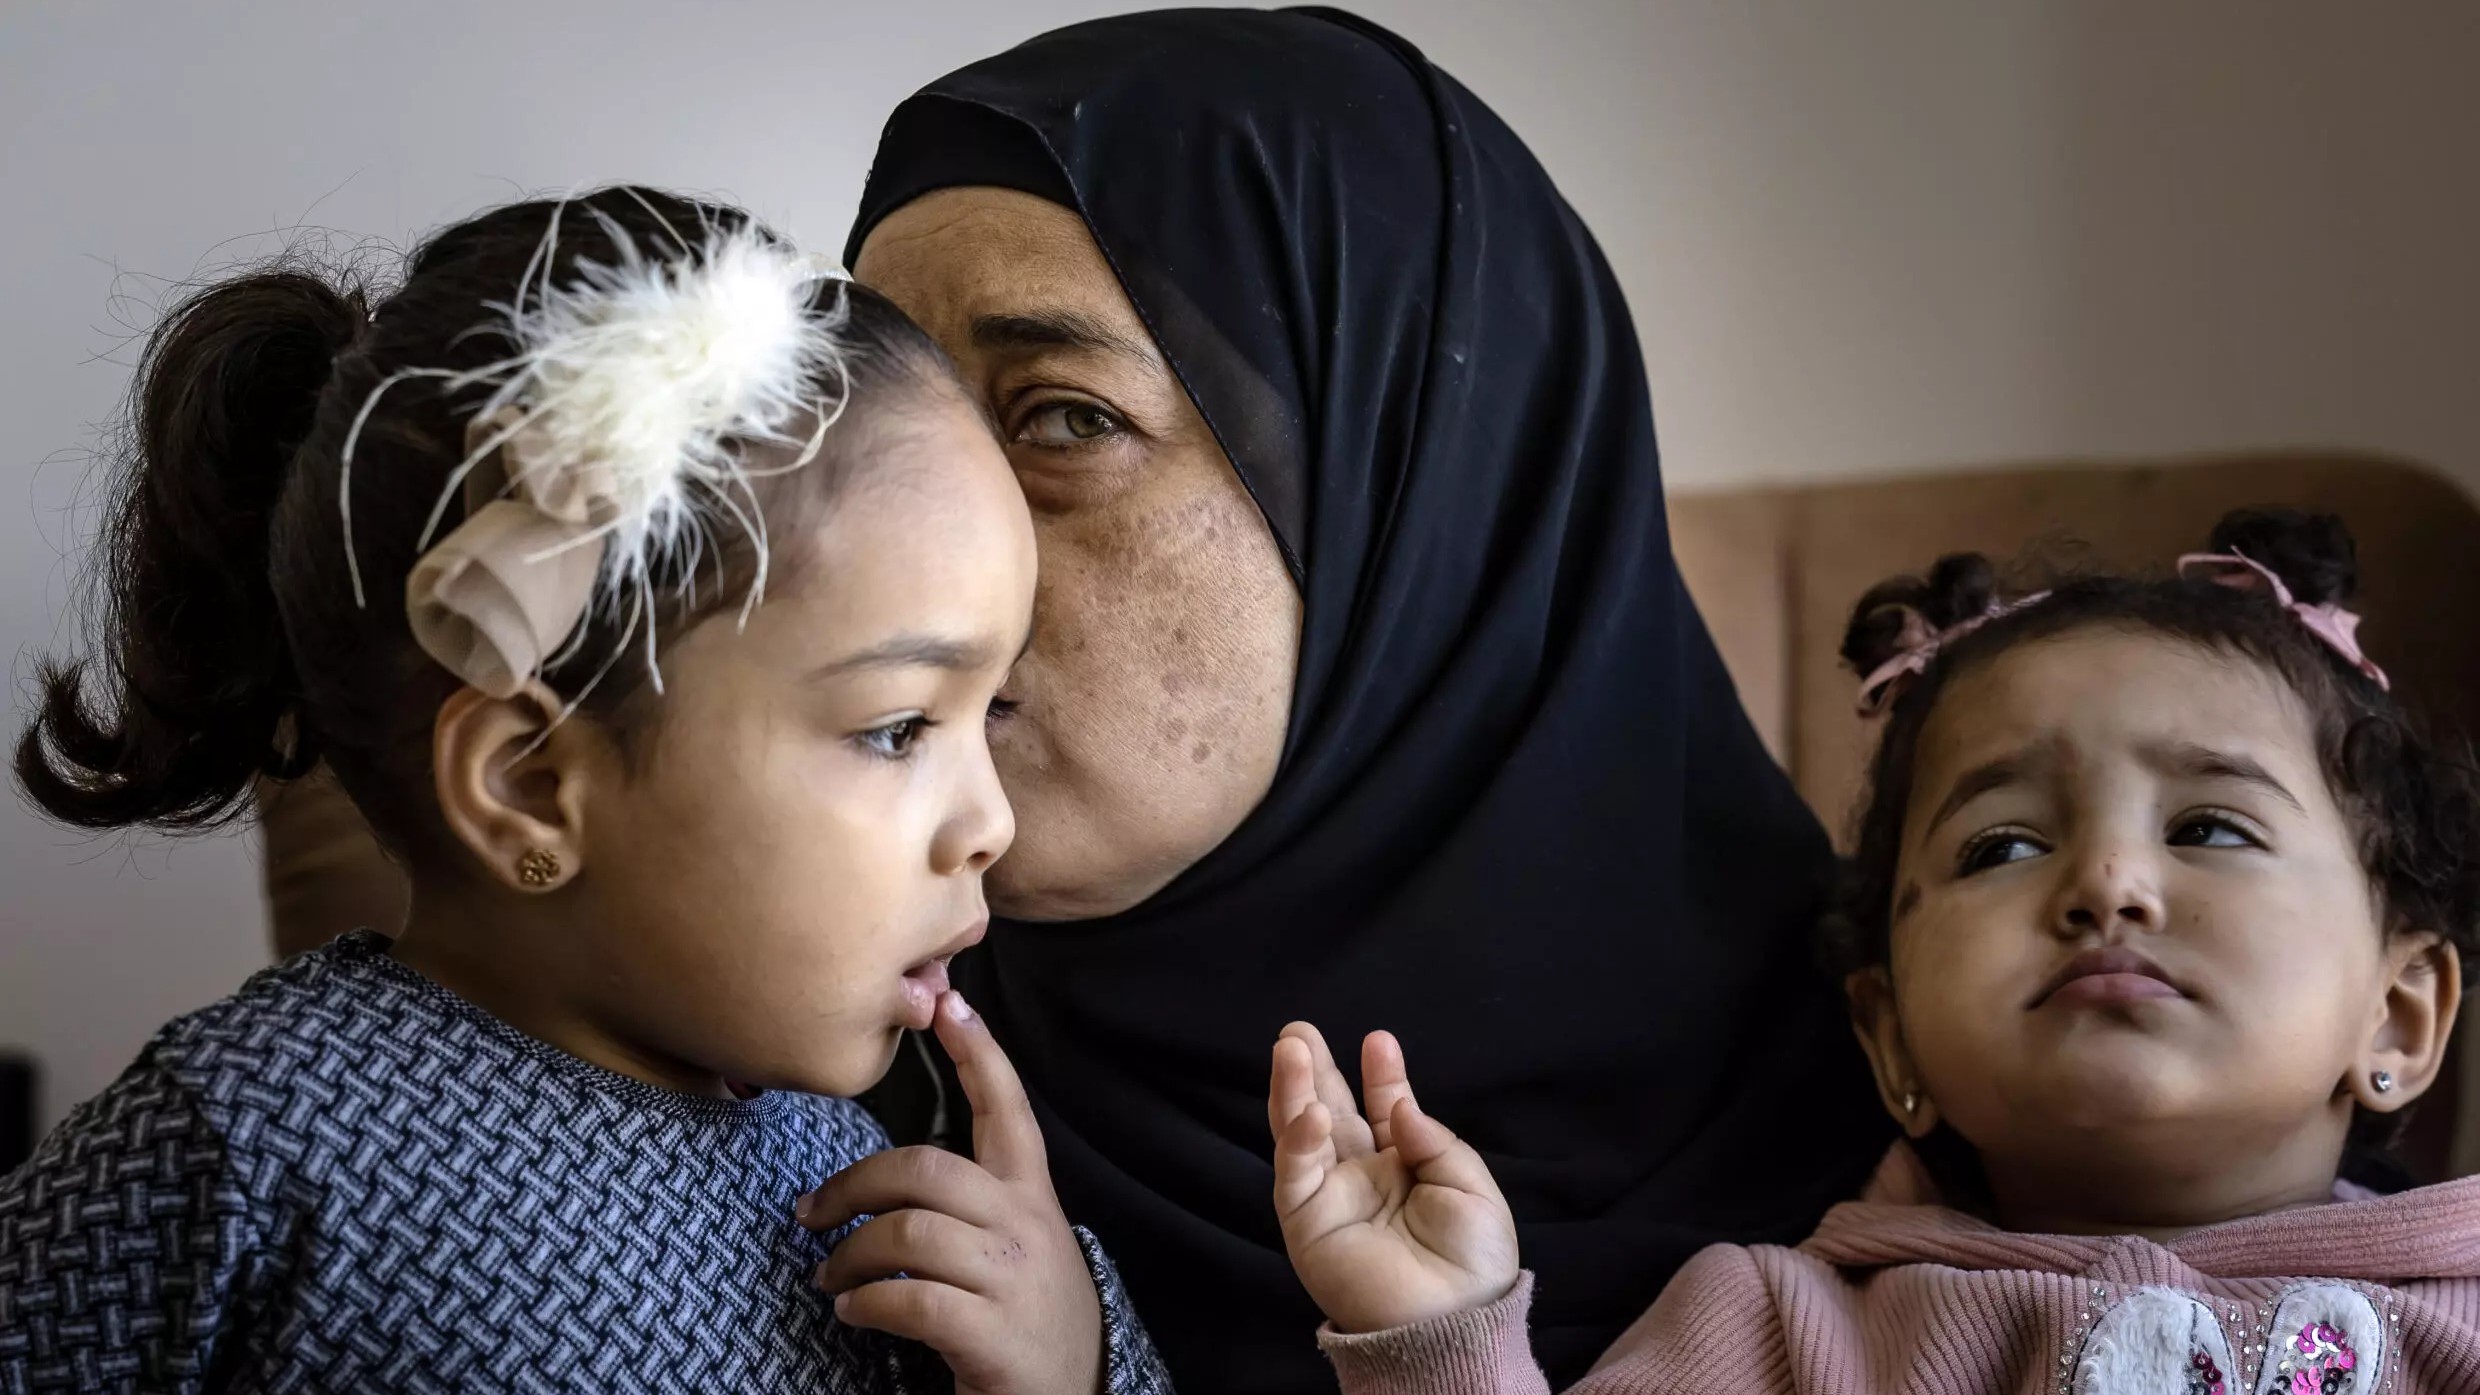 إيمان صباغ، والدة محمد صباغ الذي قتل خلال مواجهات مع الجيش الإسرائيلي في 9 تشرين الثاني/نوفمبر، تحتضن ابنتيه في منزل العائلة في جنين بالضفة الغربية المحتلة في 18 نوفمبر 2023